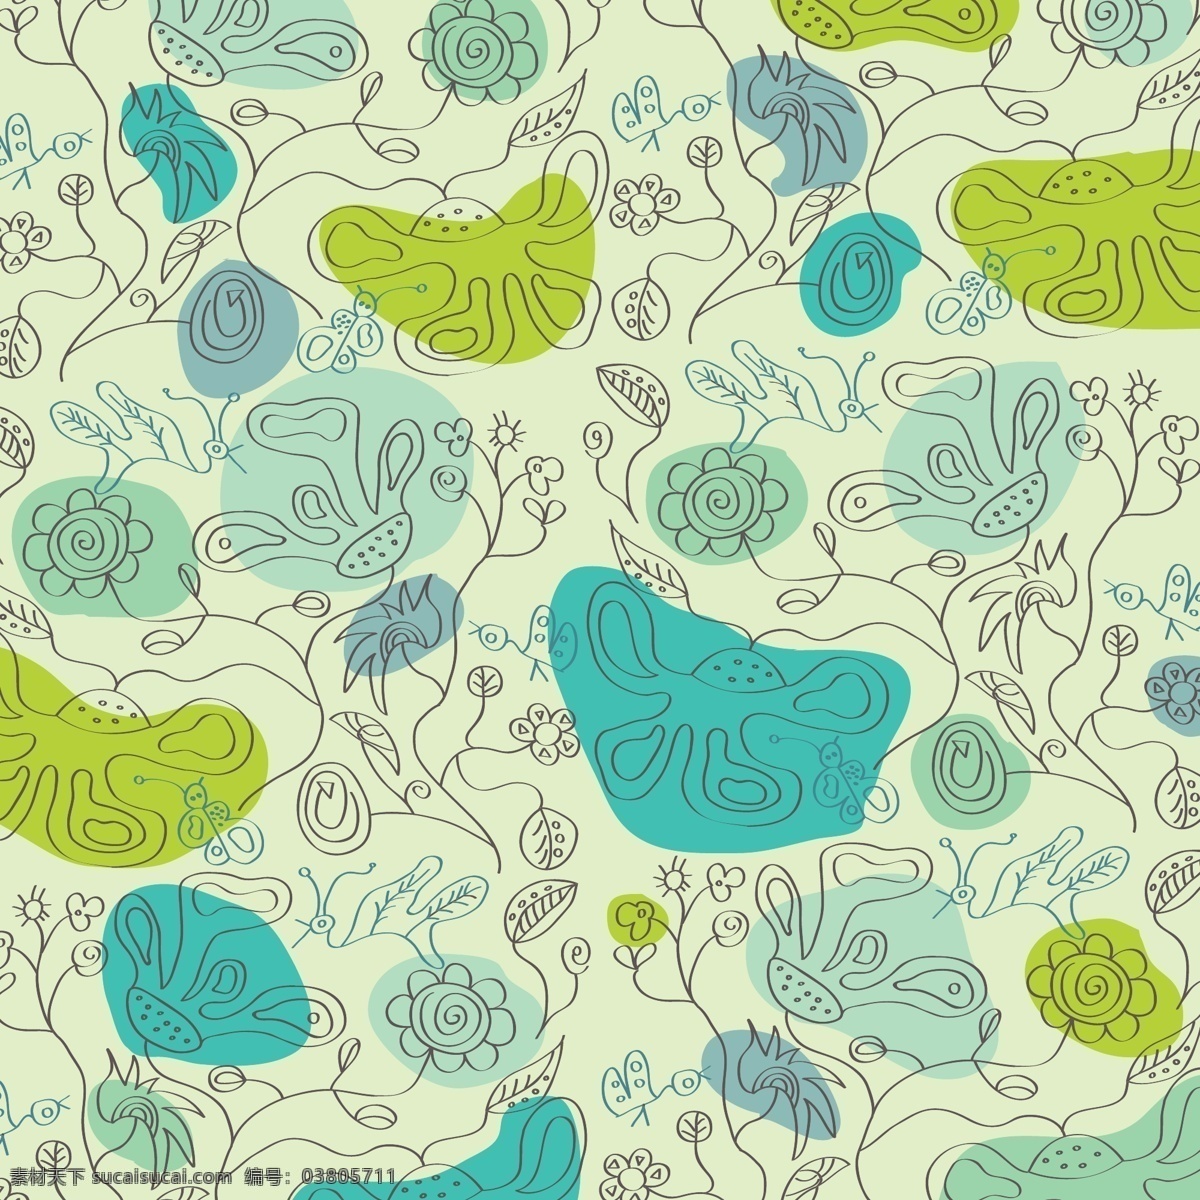 美丽 绿色 花卉 背景 花 抽象 夏季 时尚 鸟 自然 叶 春 蓝 手绘 色彩 壁纸 涂鸦 涡流 创意 装饰 现代 清洁